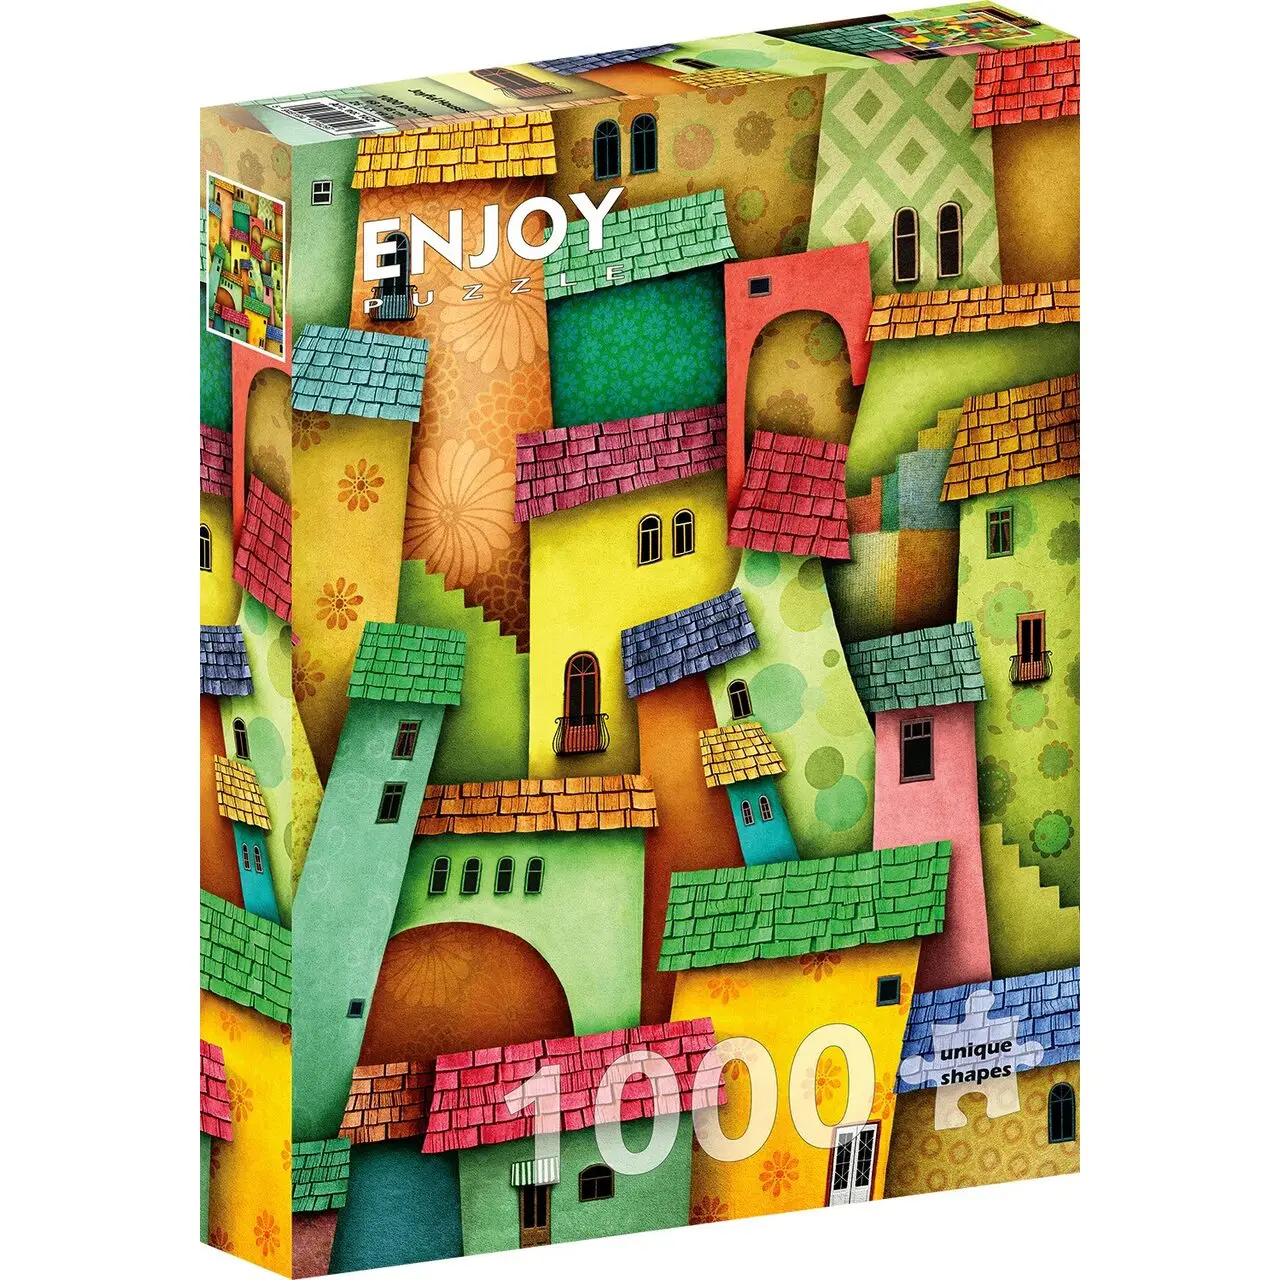 Puzzle Houses Joyful